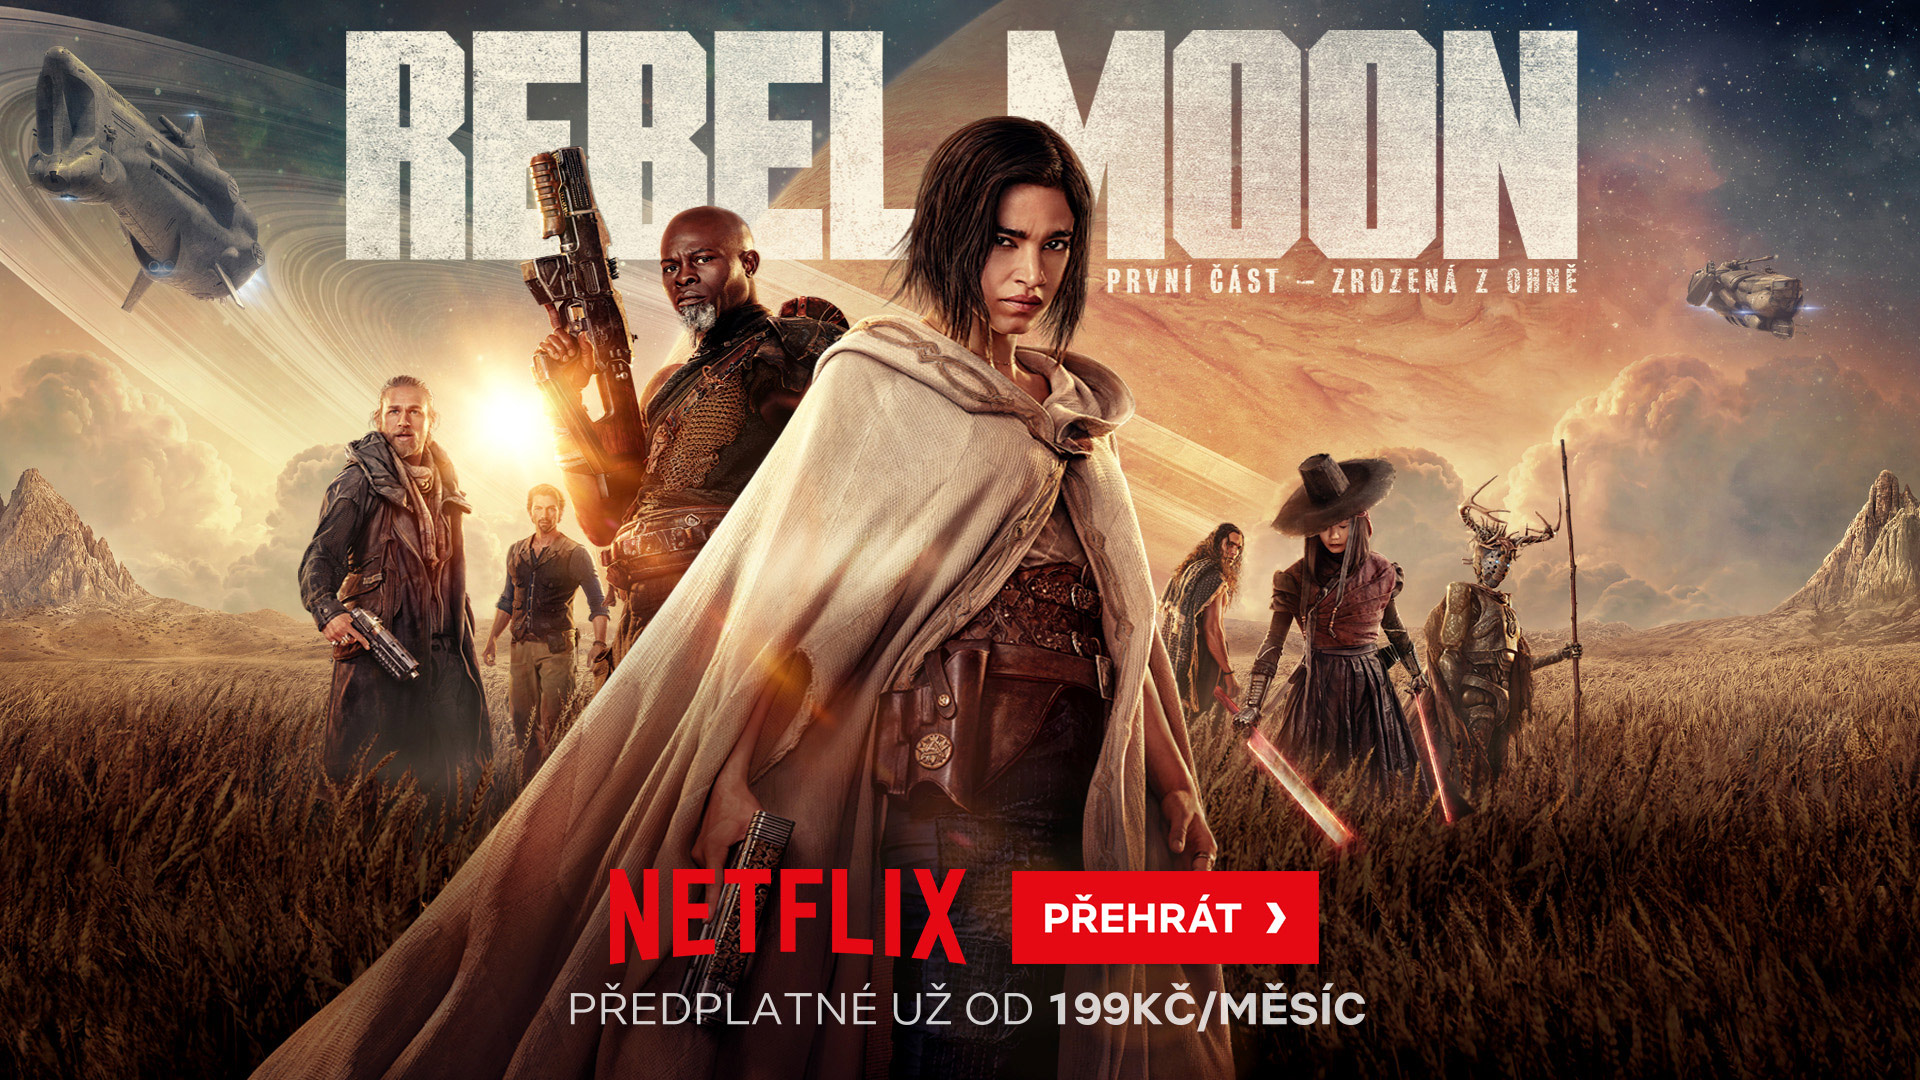 Sci-fi sága Rebel Moon: První část – Zrozená z ohně přichází na Netflix Christmas Harvest N102090 NETD 15653 Booster Preview